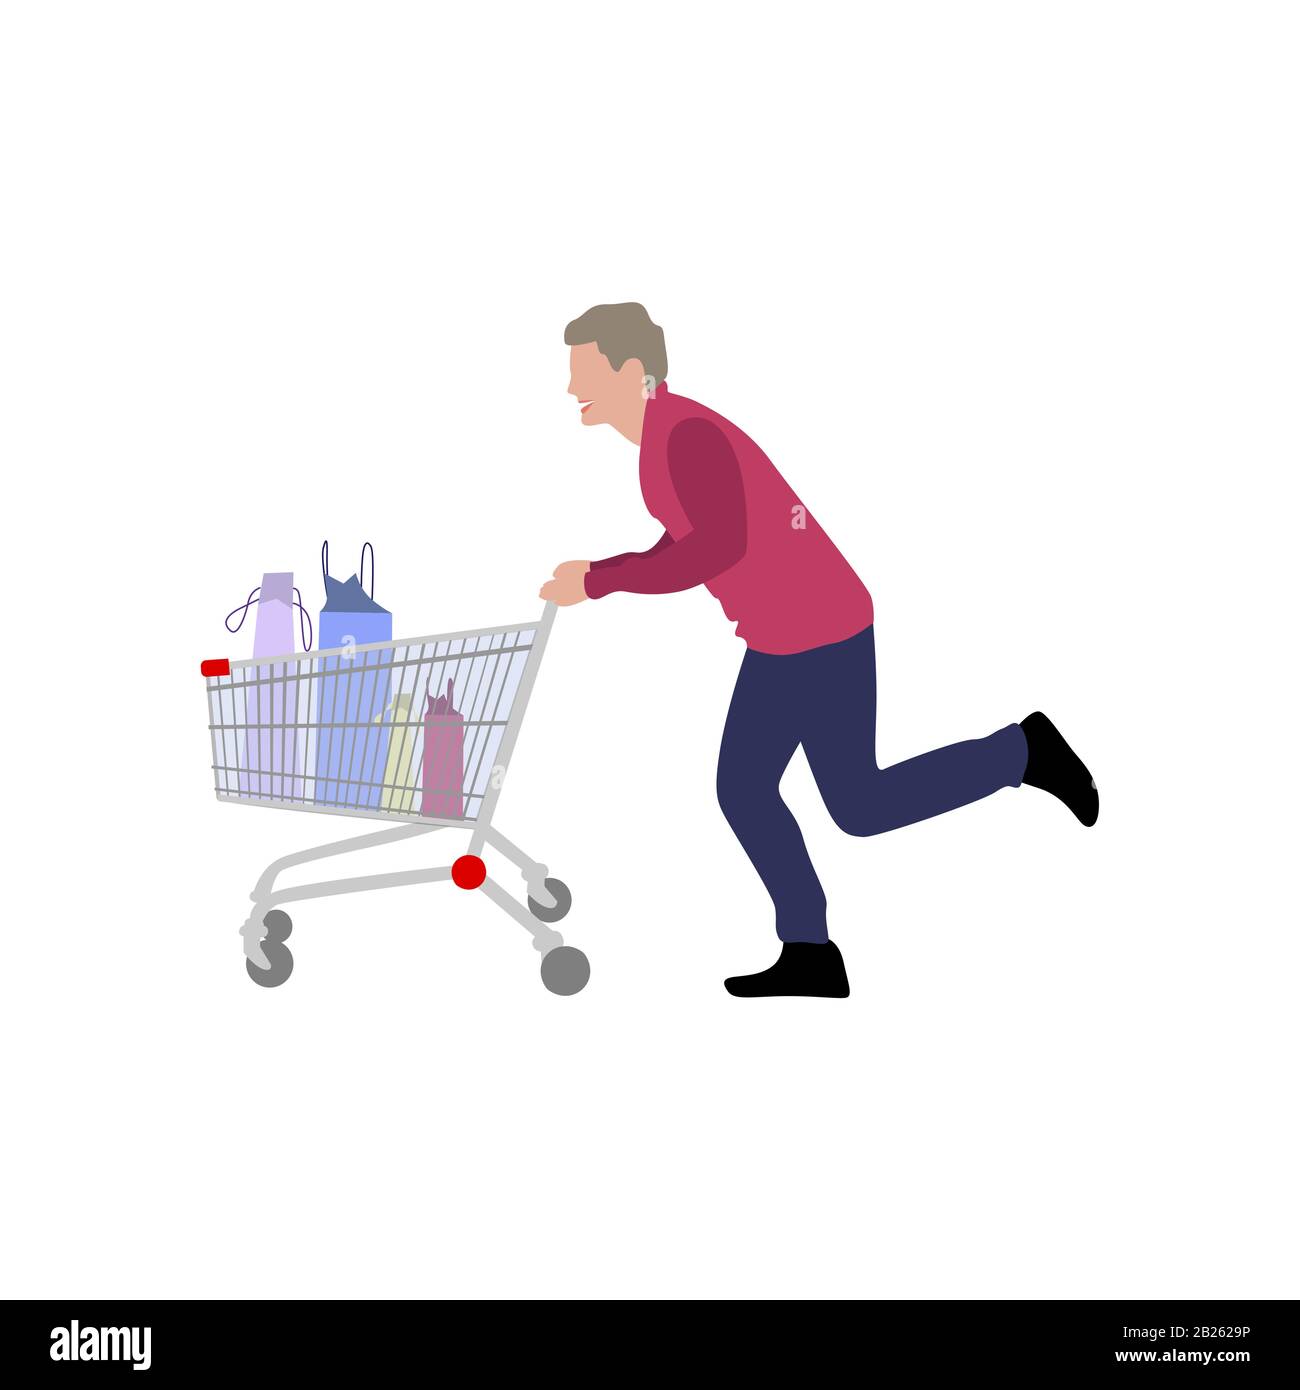 Mann mit vollem Einkaufswagen aus dem Supermarkt. Vektorfigur läuft Hypermarket weg, Person mit Schubkarre nach dem Einkaufen, Illustrations-Typ mit Korbflechterei in mA Stock Vektor